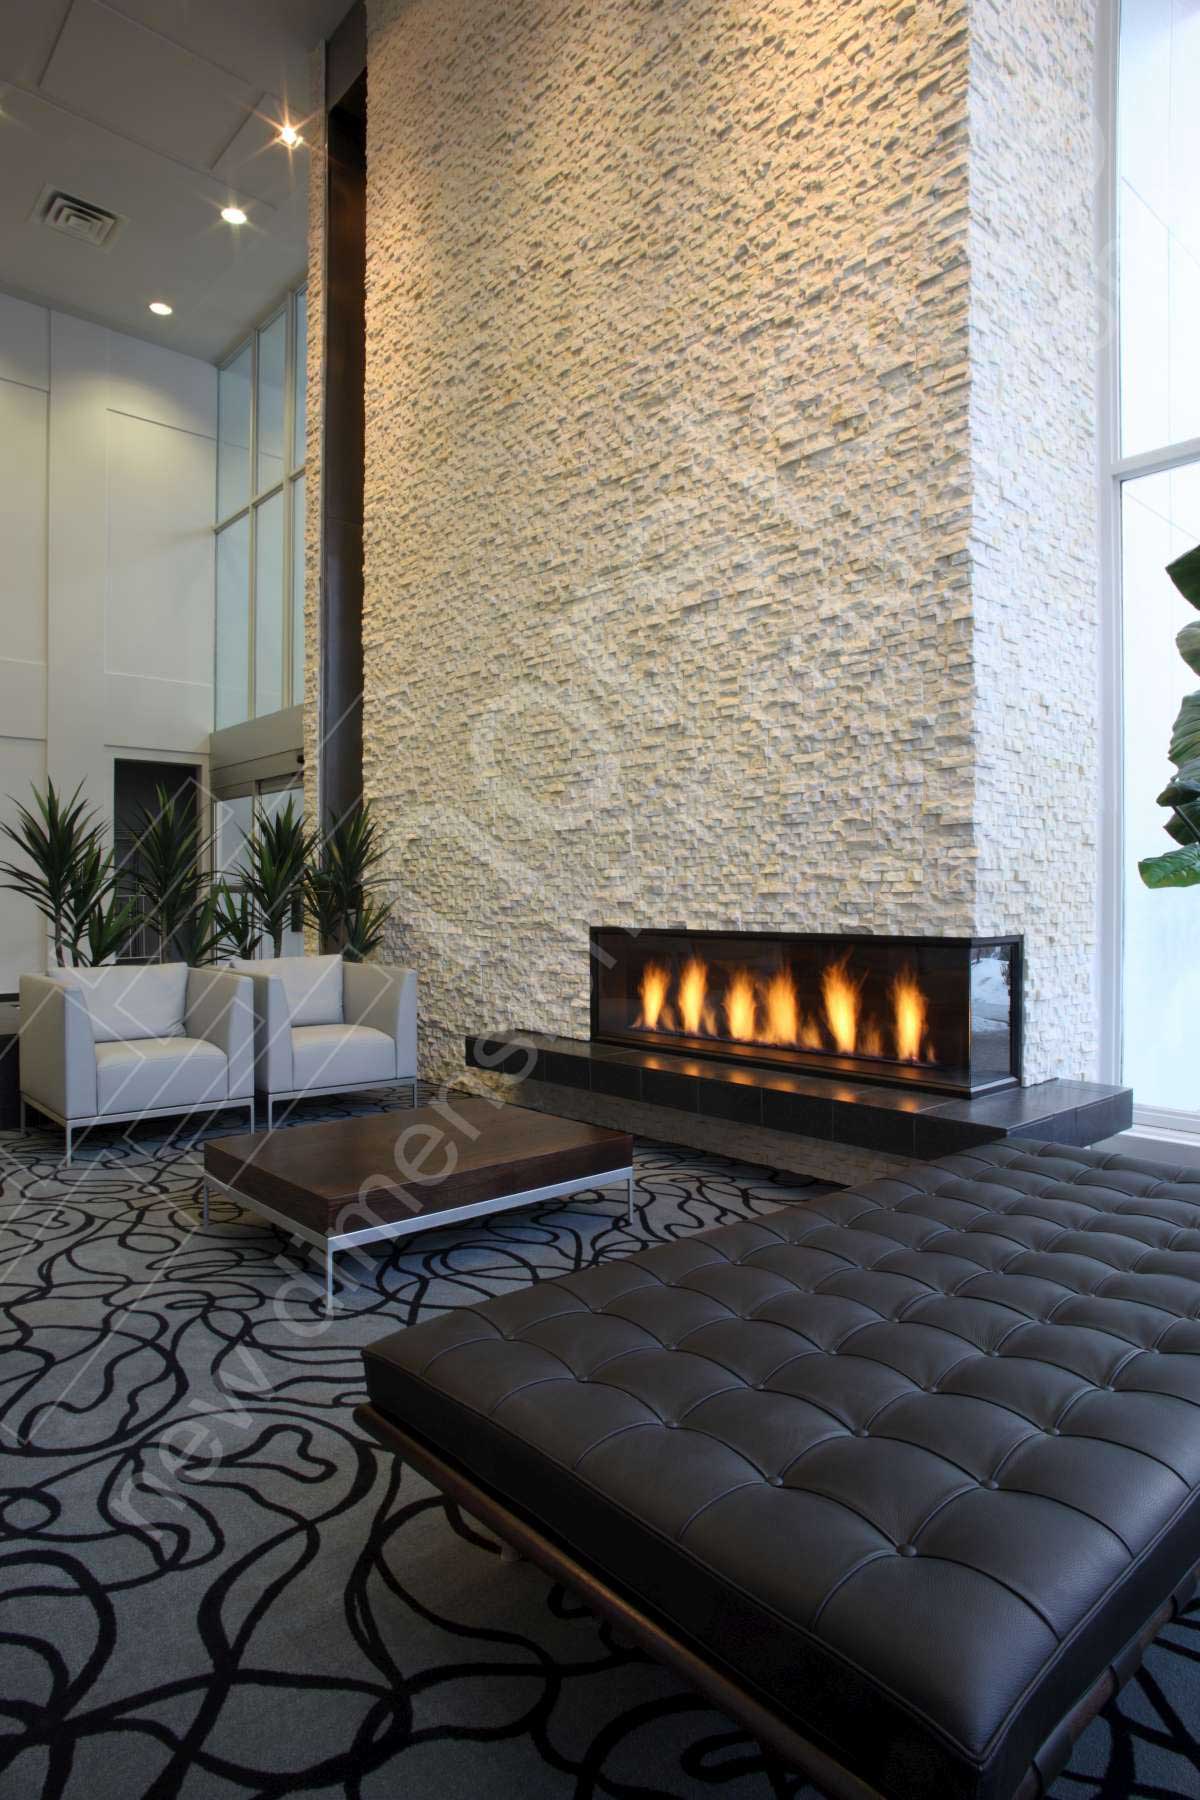 Matrix Hotel White Fireplace